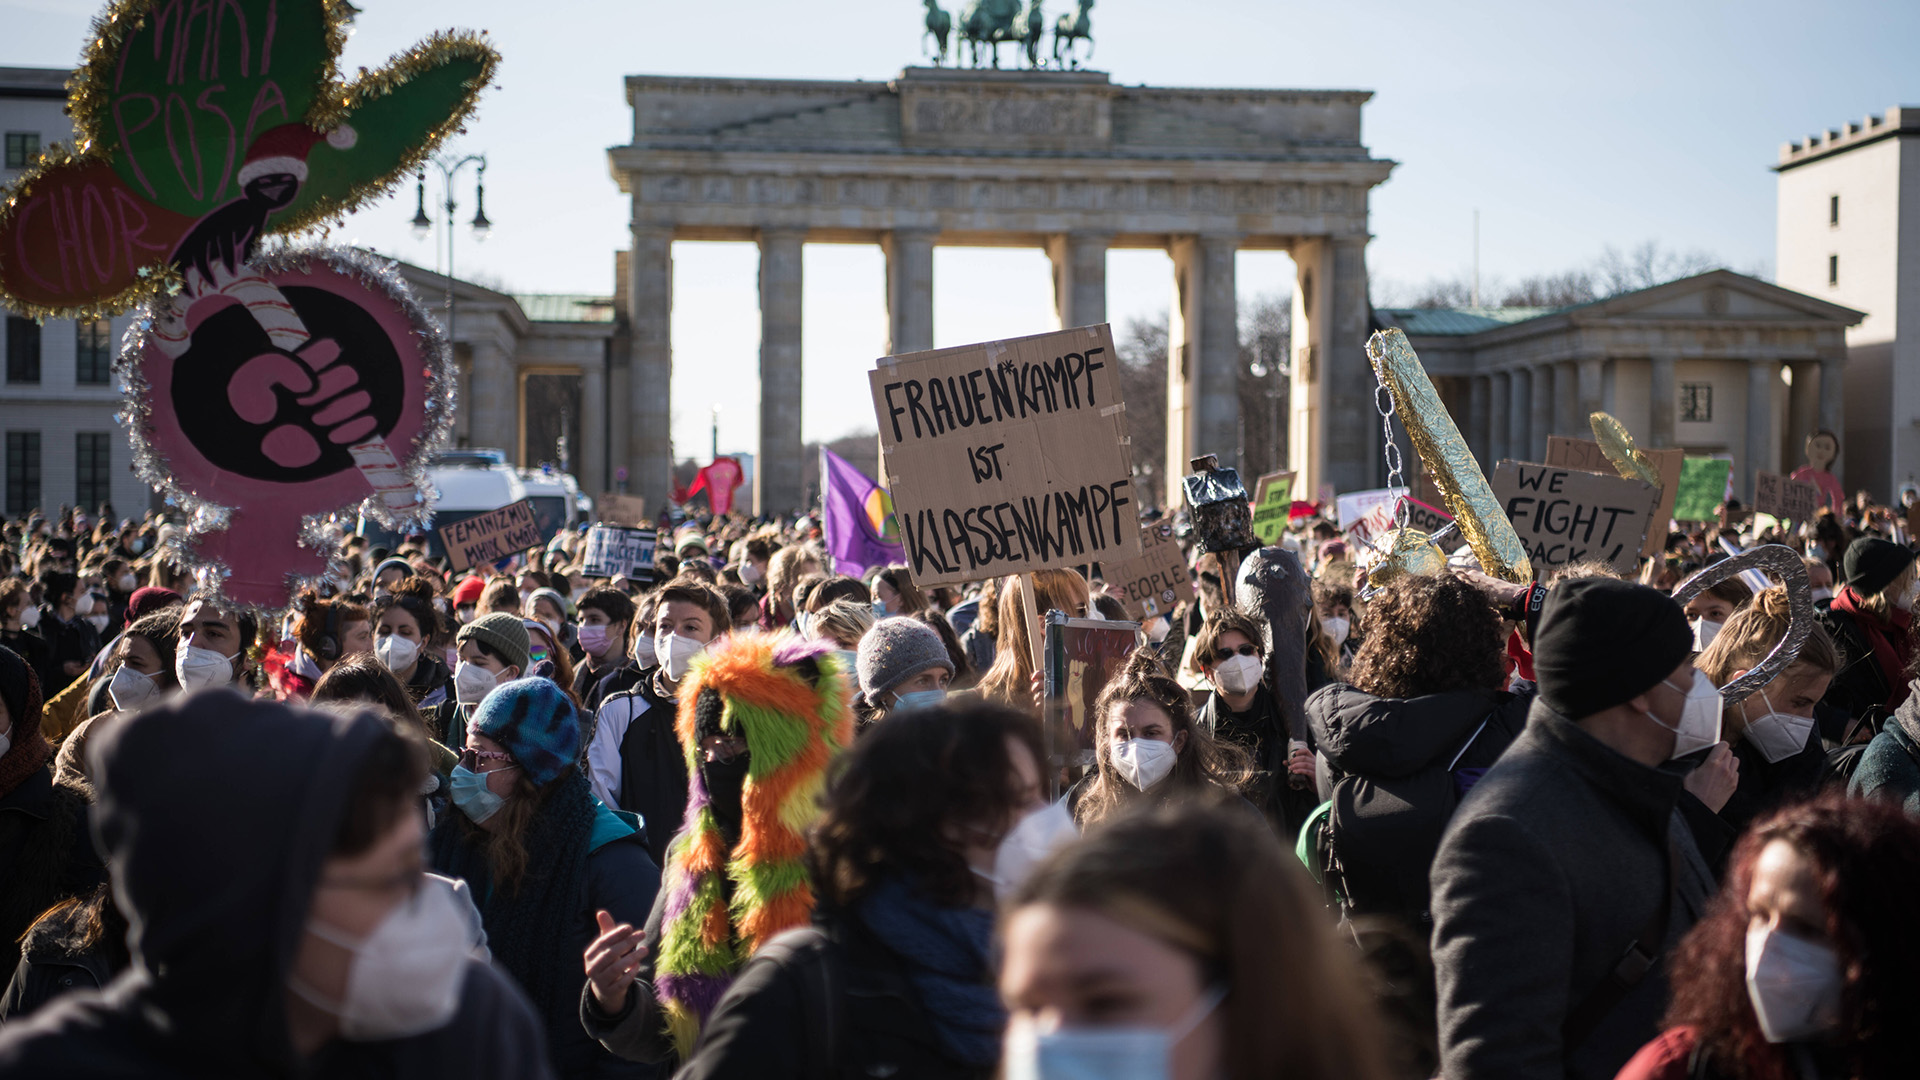 Zum internationalen Frauentag, dem 8. März, demonstrierten in Berlin mehrere Tausend Frauen. (Archivbild: 08.03.2021) | imago images/Bildgehege